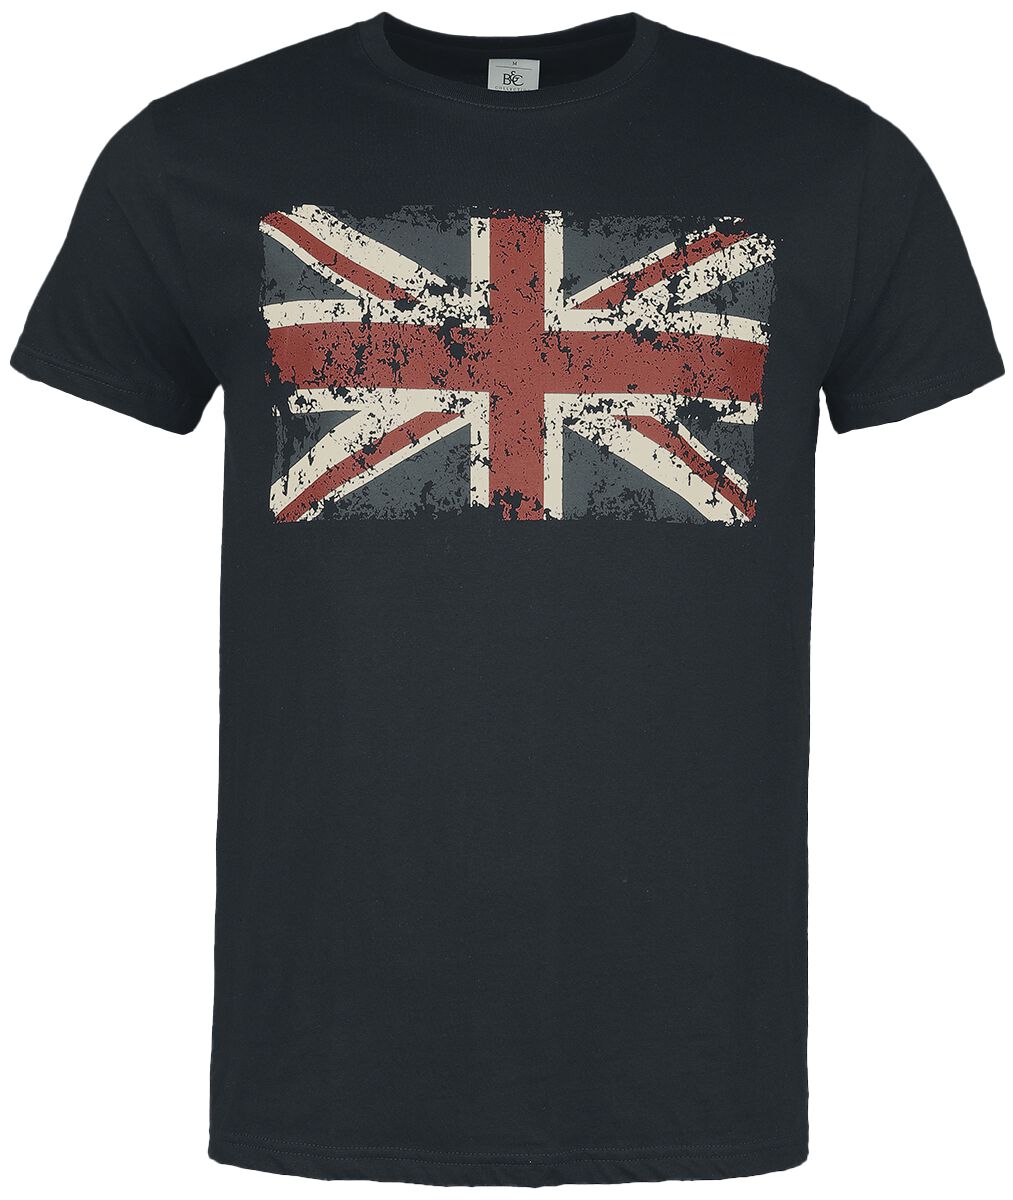 Gasoline Bandit - Rockabilly T-Shirt - Union Jack - S bis 4XL - für Männer - Größe S - schwarz